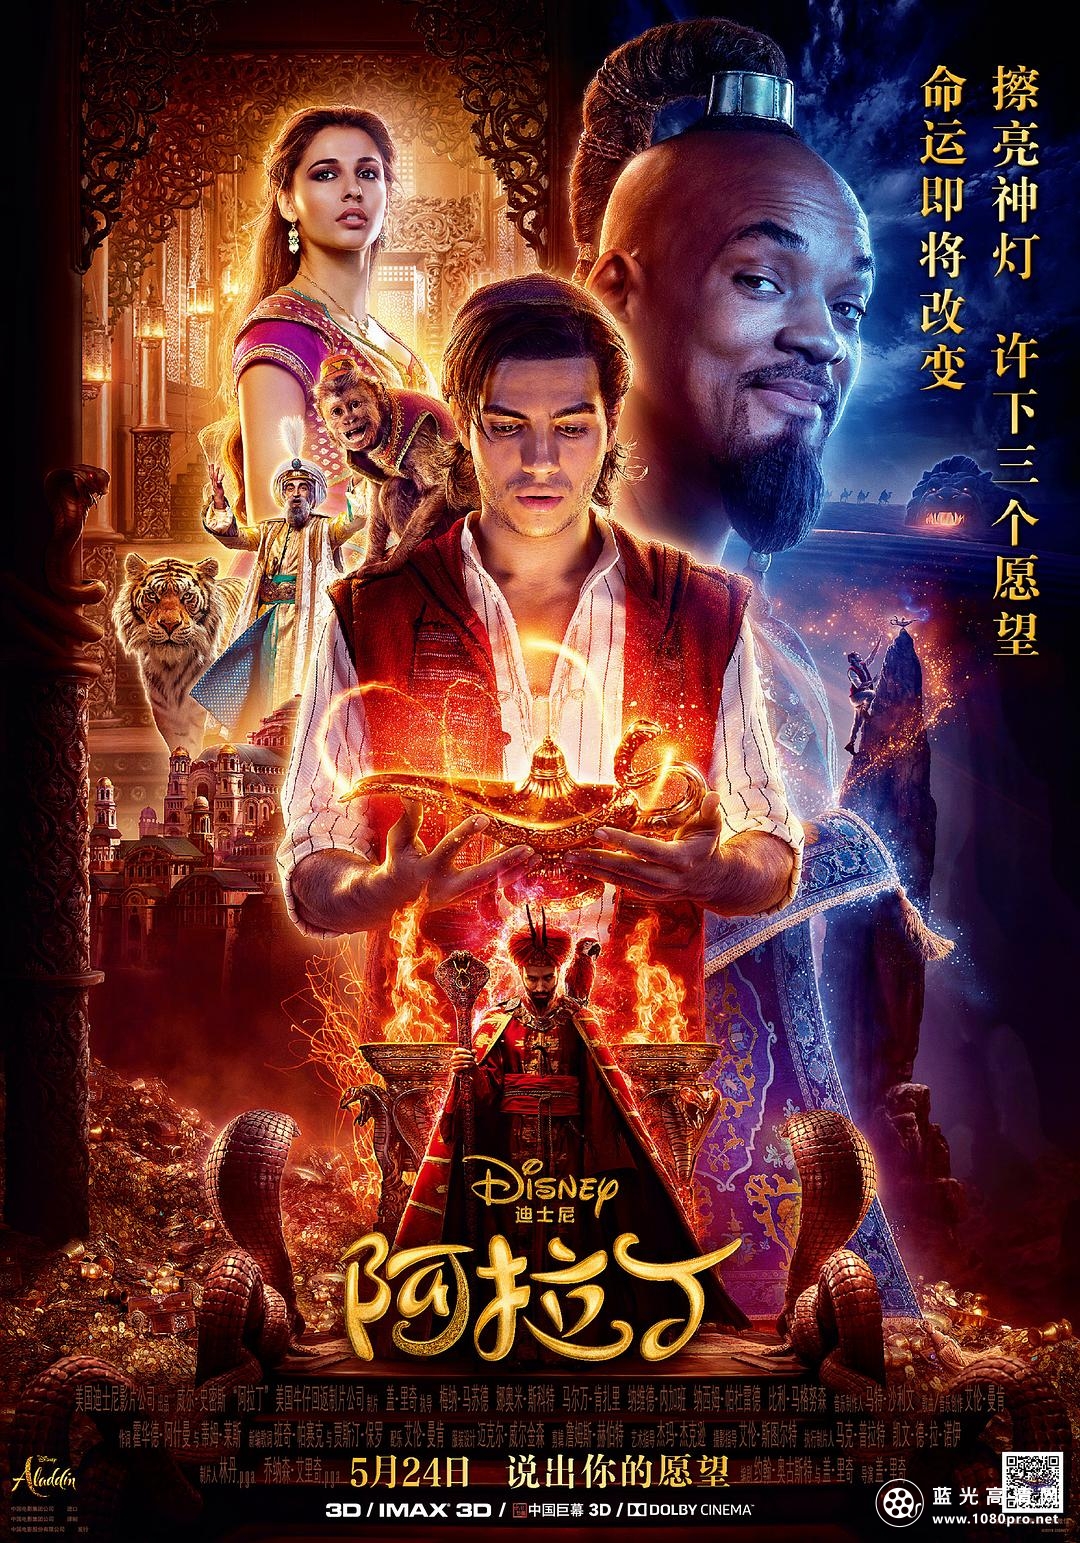 阿拉丁/阿拉丁真人版 Aladdin.2019.720p.BluRay.x264-SPARKS 6.57GB-1.png